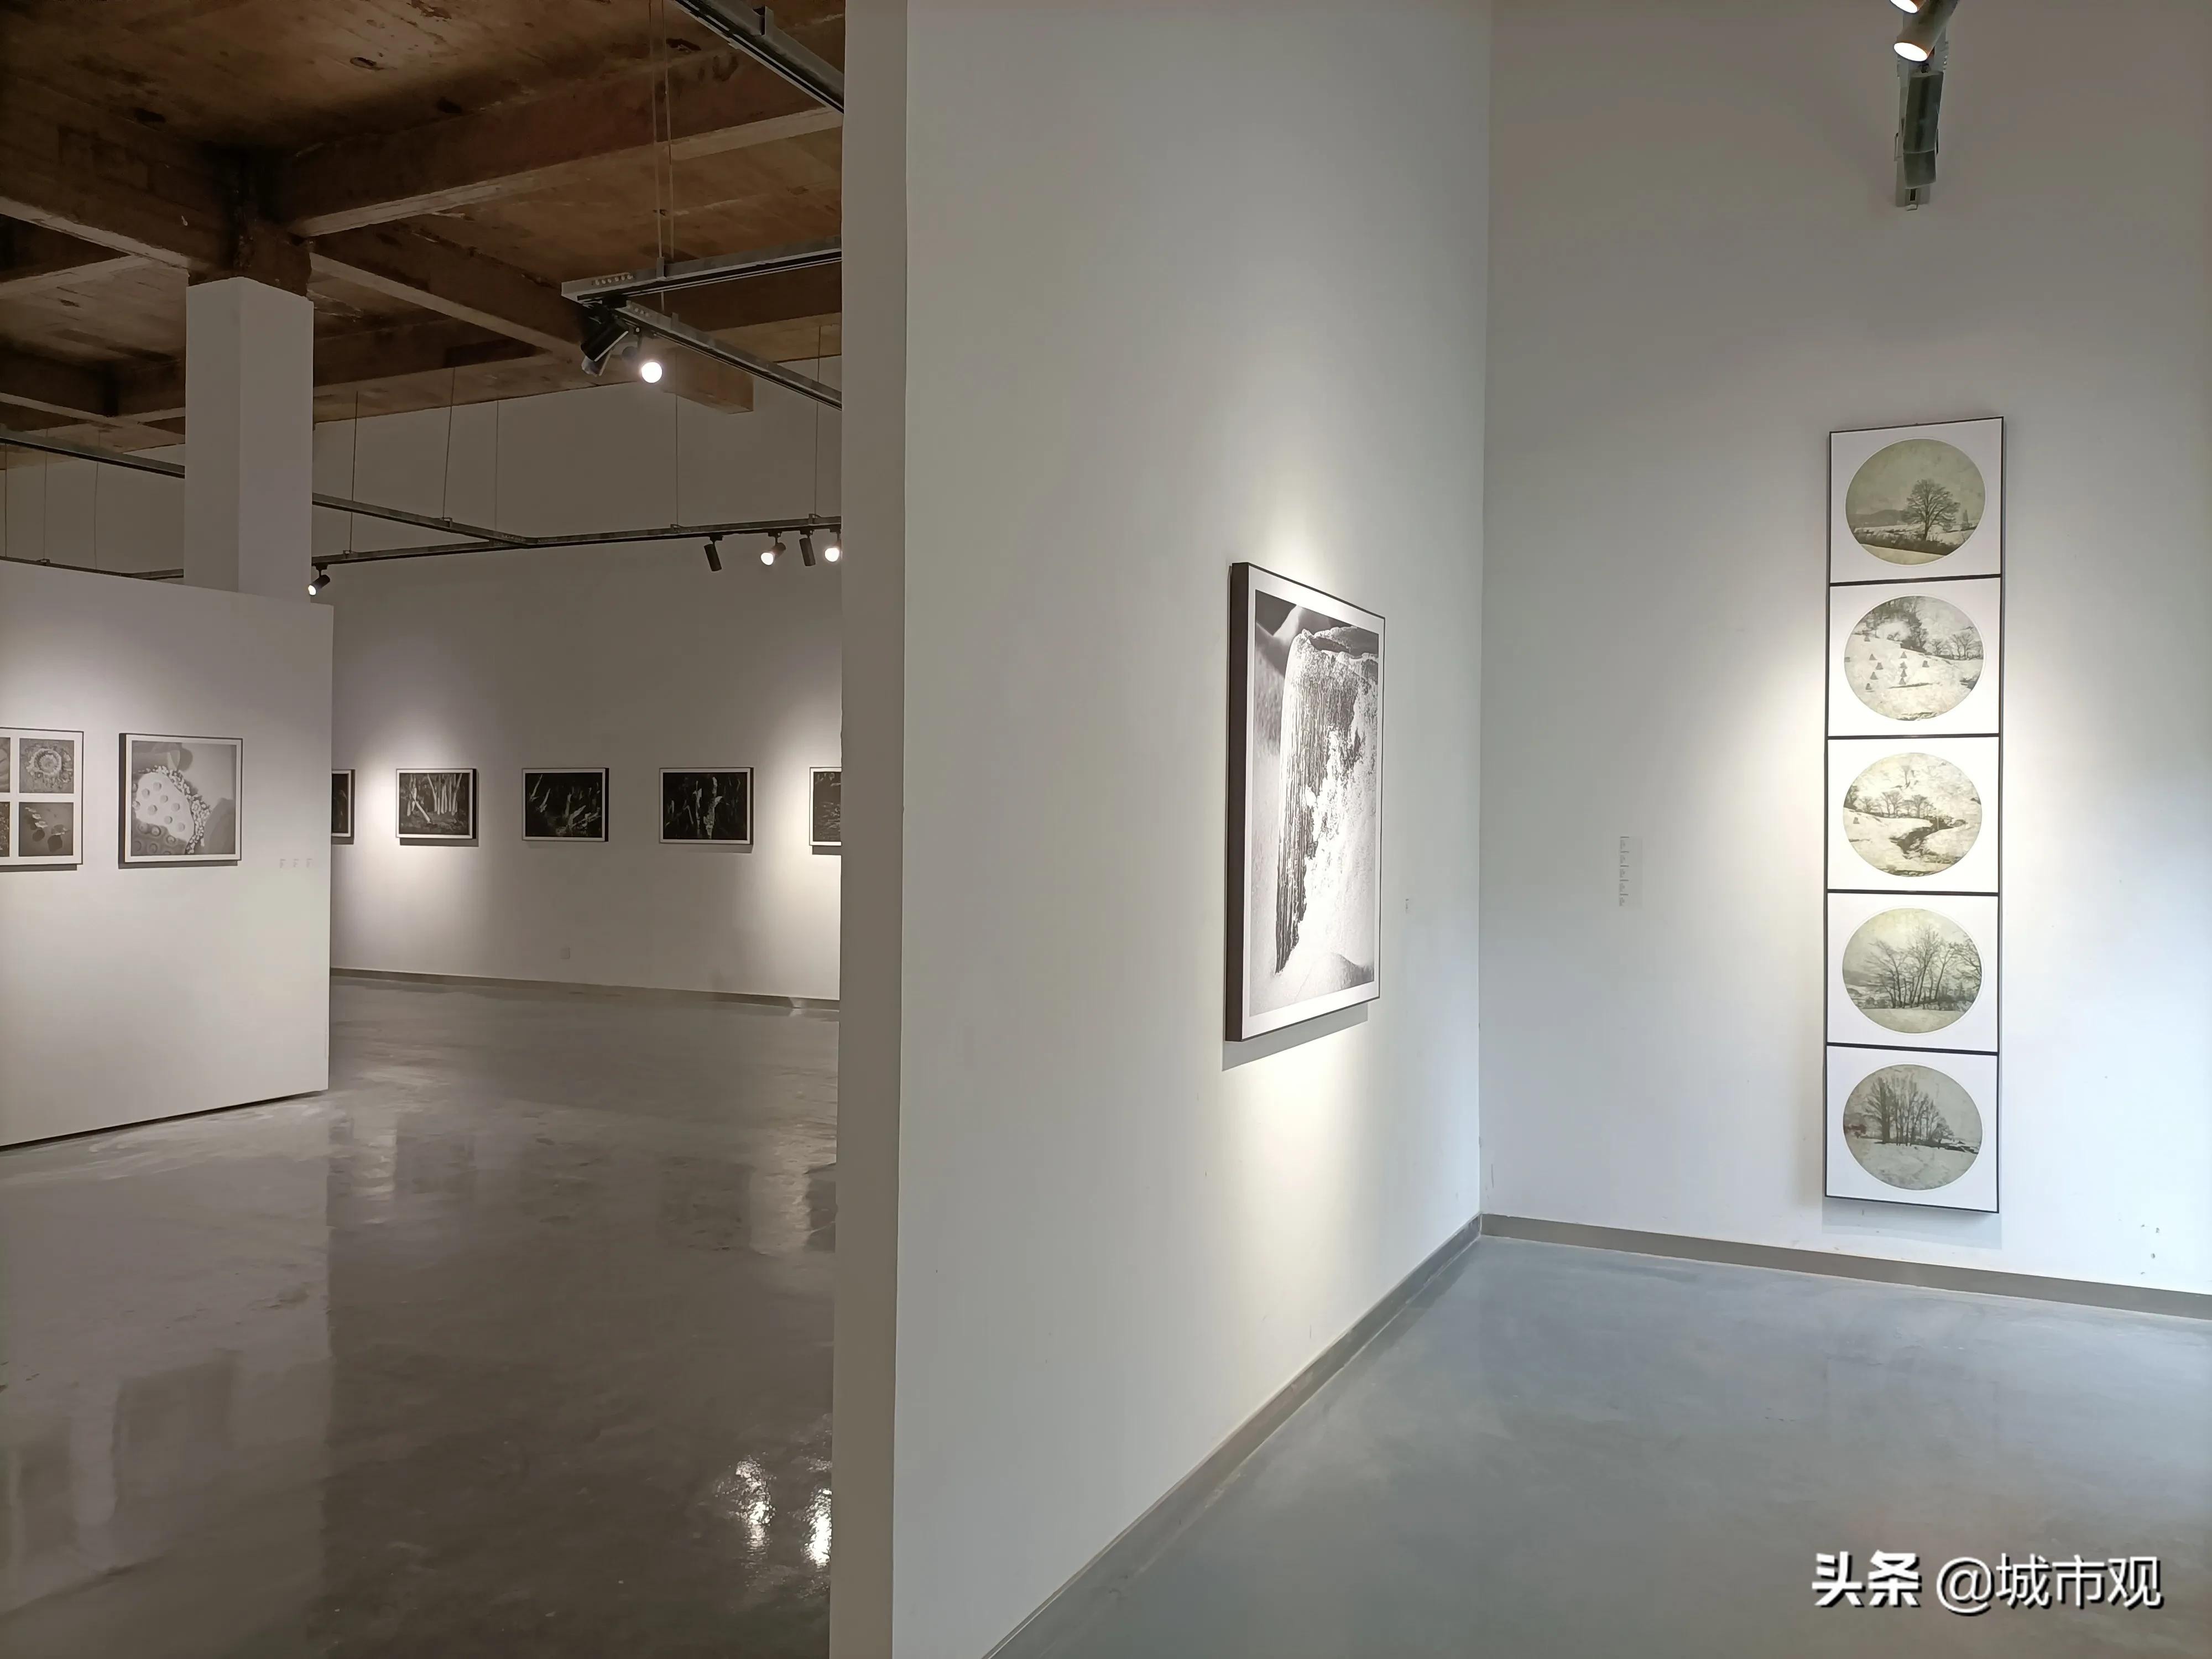 大展黔圖《一輪·素念禪心》黃驛倫攝影作品在貴州師大美術館展出